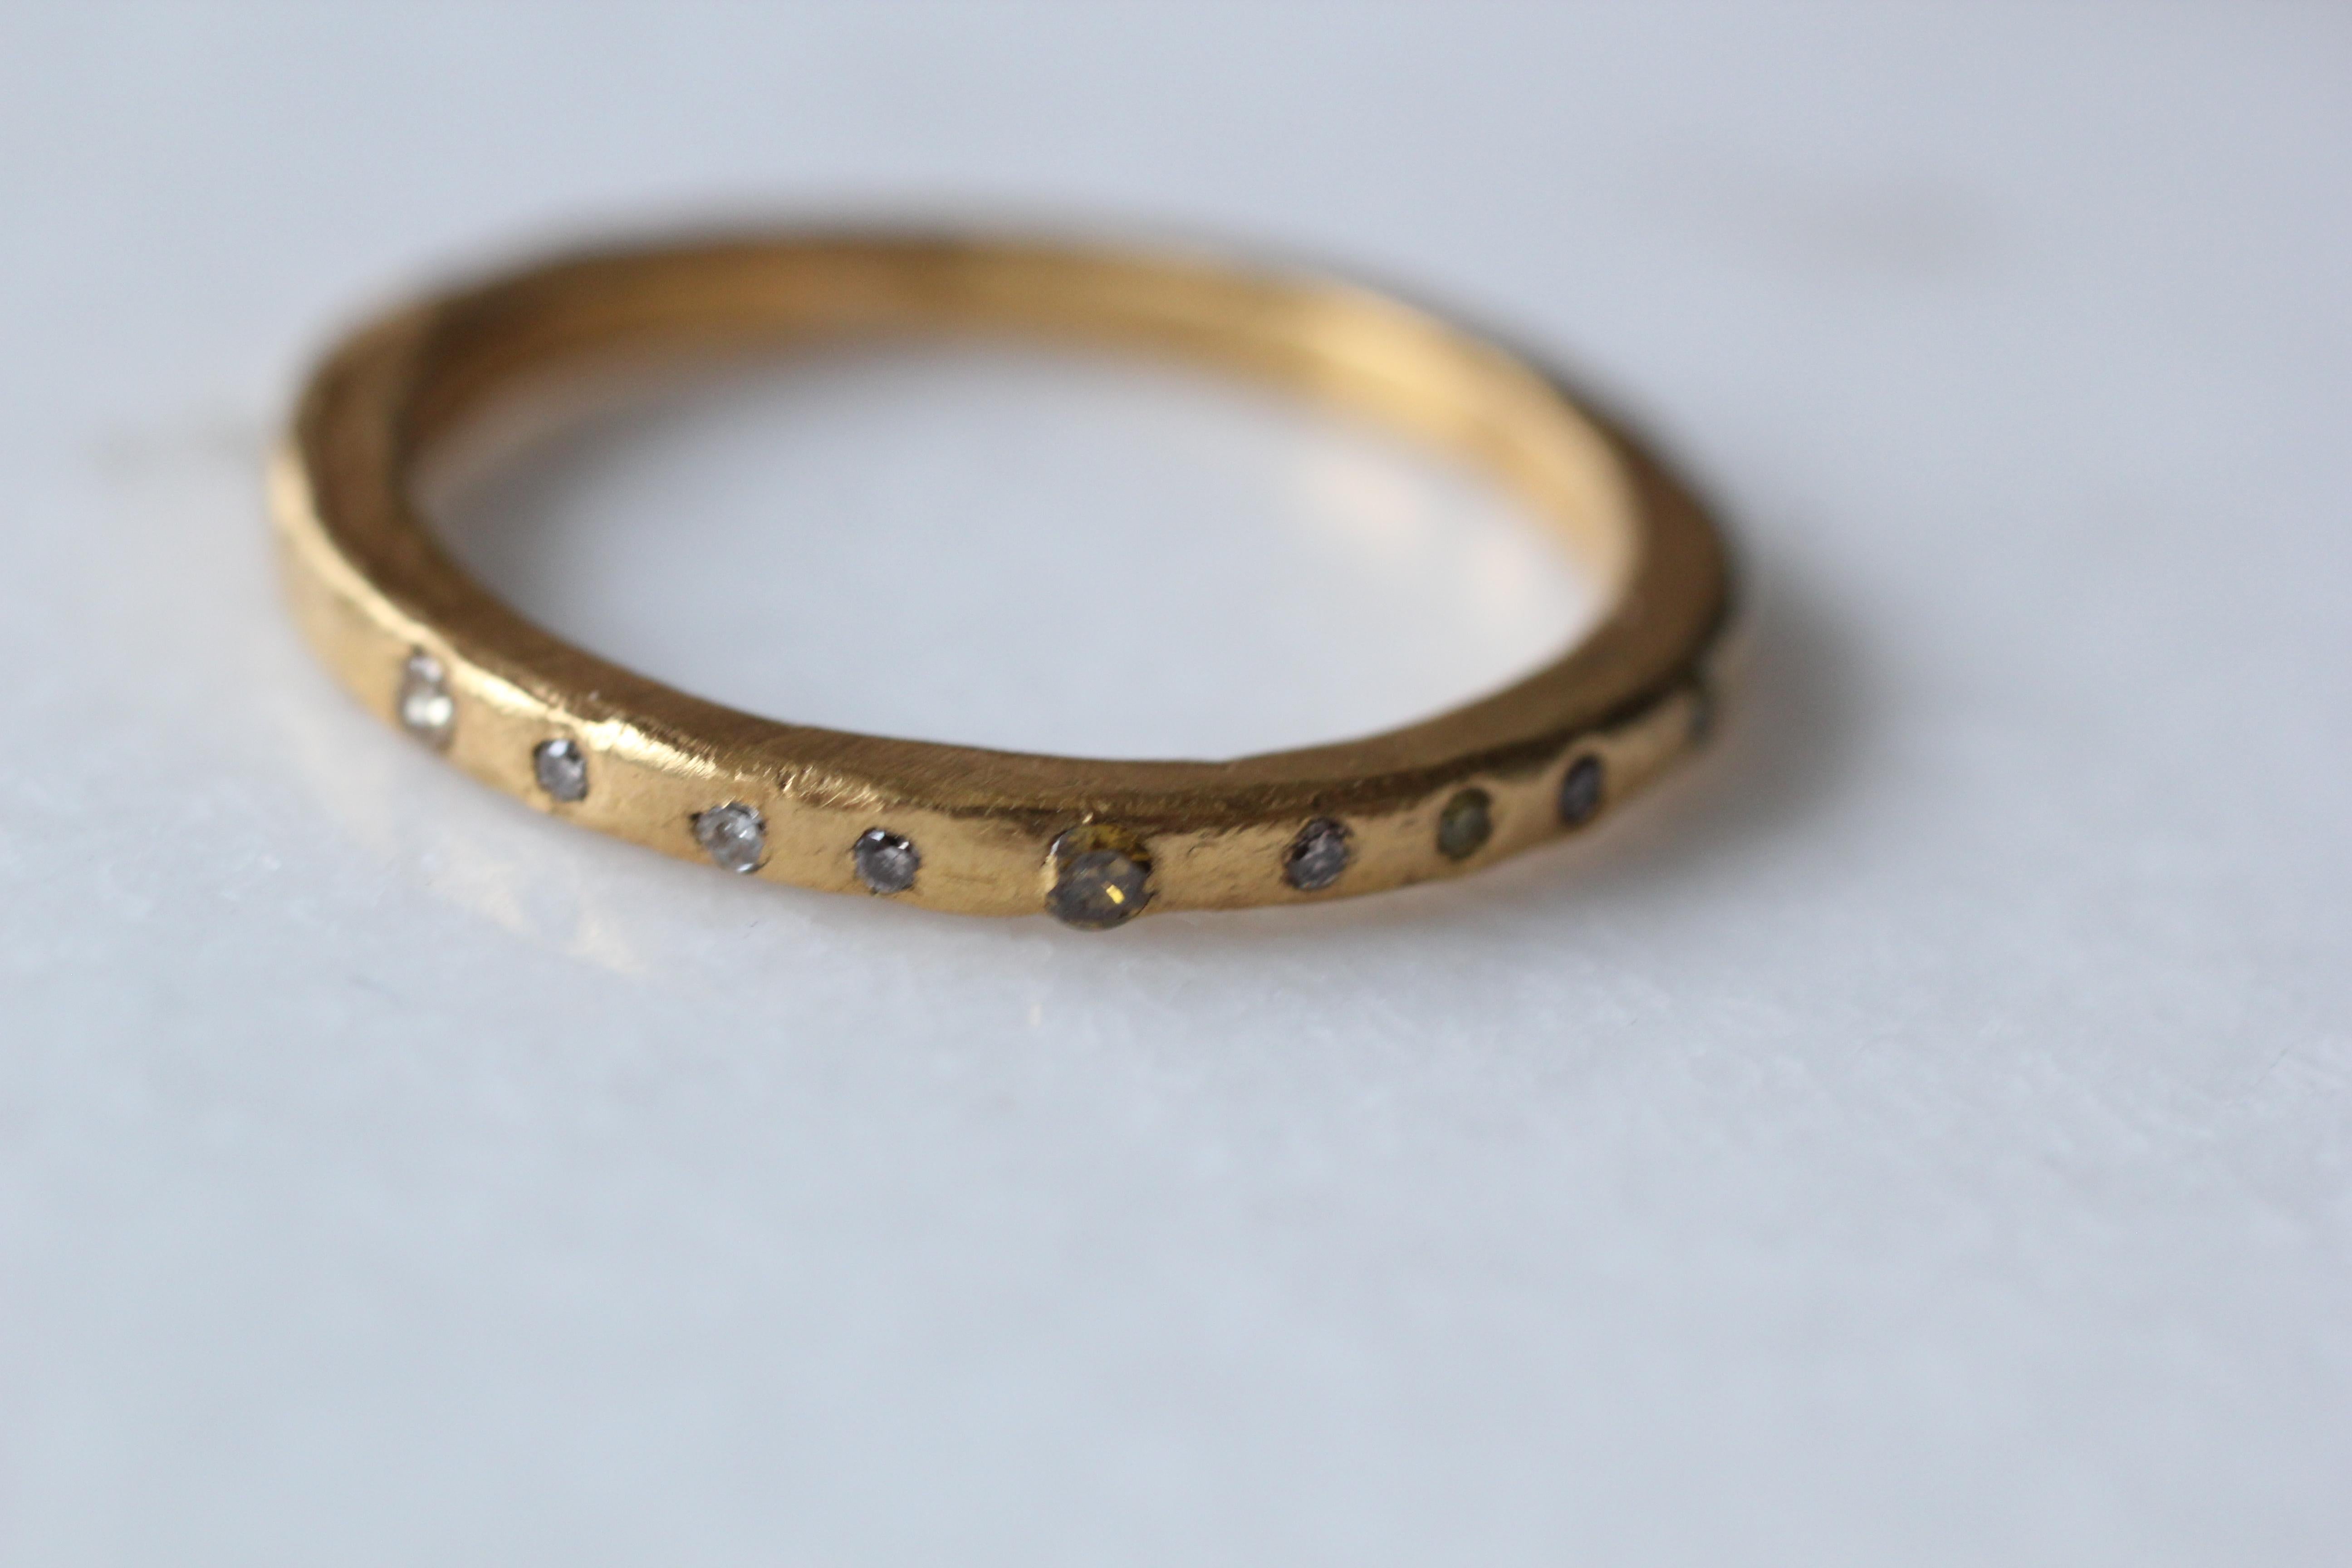 Simplicity Small wedding Band Ring mit 9 Diamanten. Zum Verkauf steht hier ein handgefertigter Ehering aus 21k Gold mit 9 Diamanten besetzt. Handgefertigtes zeitgenössisches Design.  Tragen Sie ihn allein oder kombinieren Sie ihn mit unseren anderen